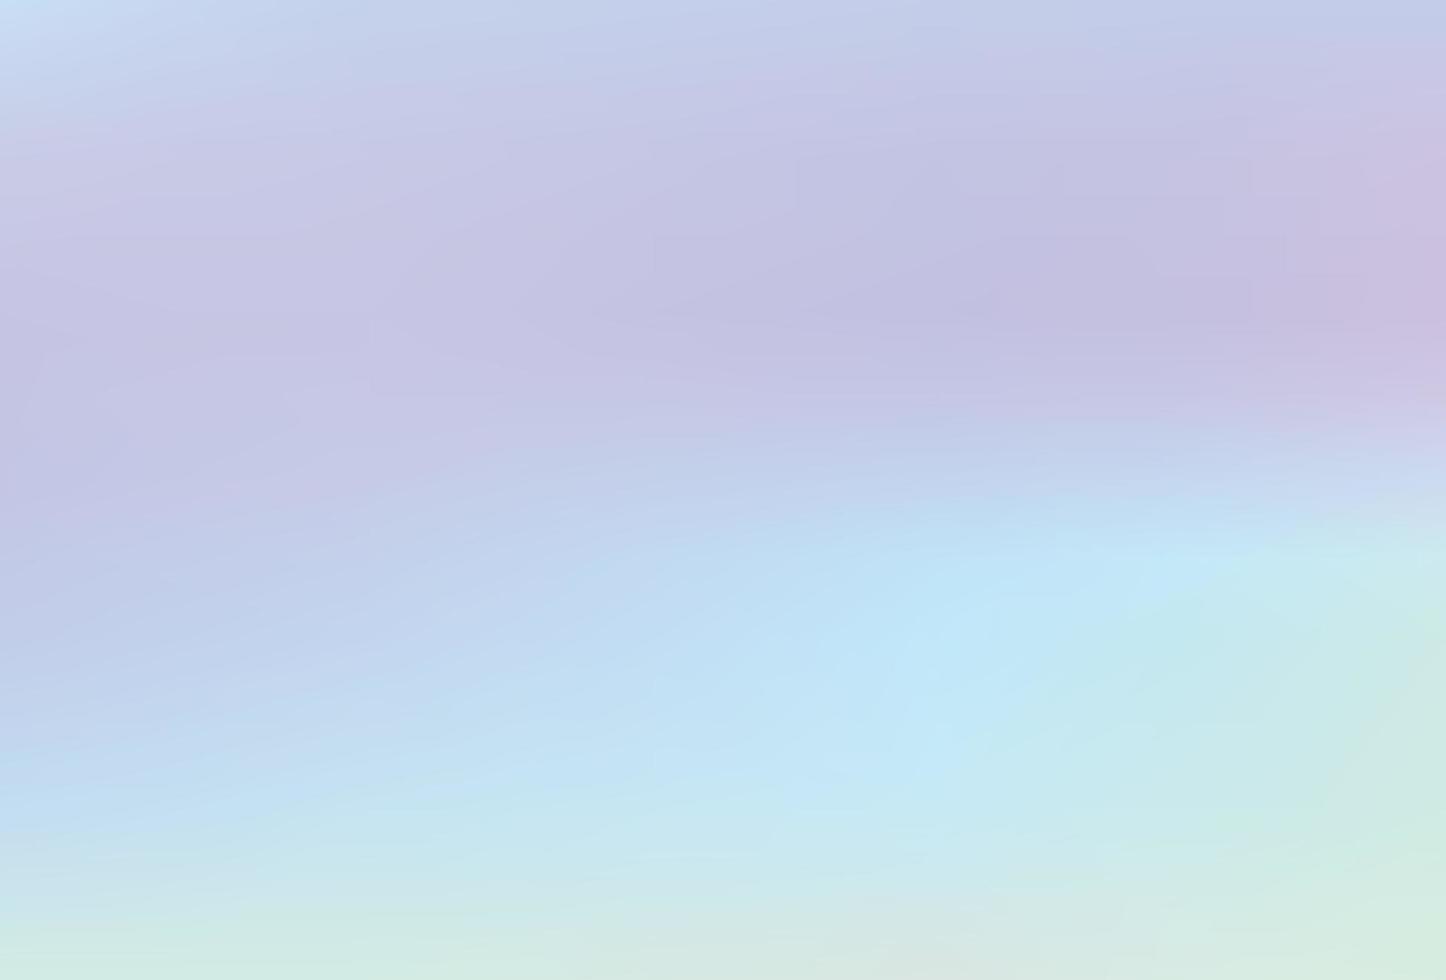 Regenbogen-Einhorn-Hintergrund. Regenbogen-Einhorn-Hintergrund vektor